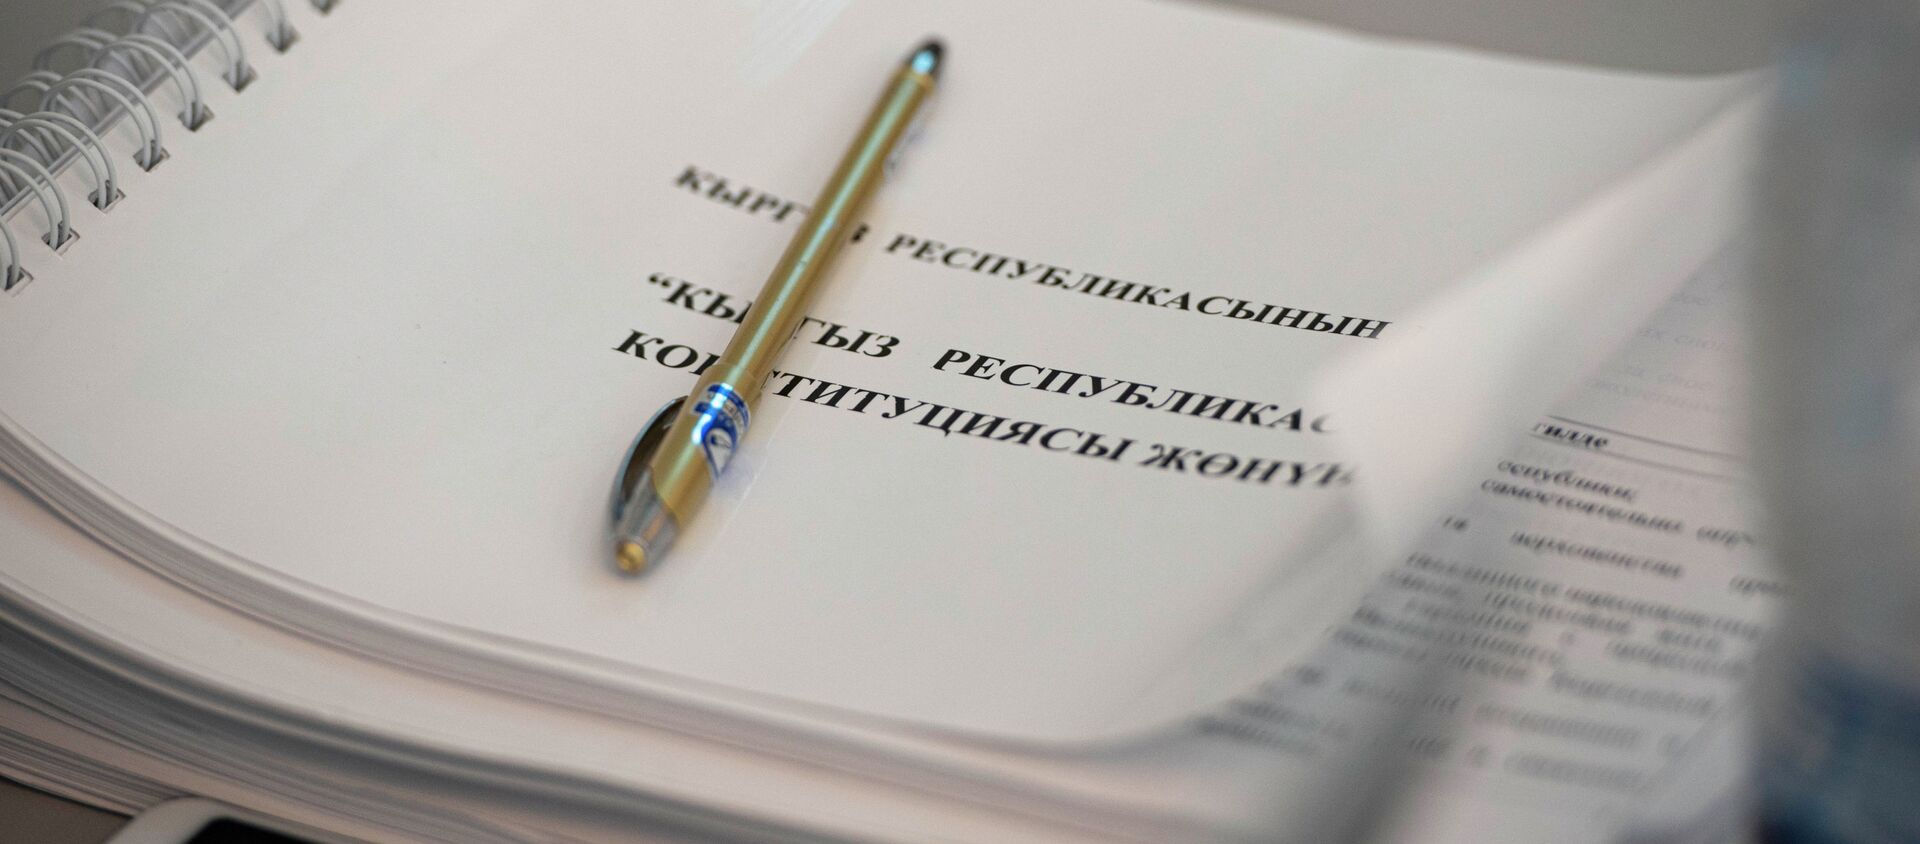 Проект новой Конституции Кыргызстана на столе в конституционном совещании - Sputnik Кыргызстан, 1920, 27.01.2021